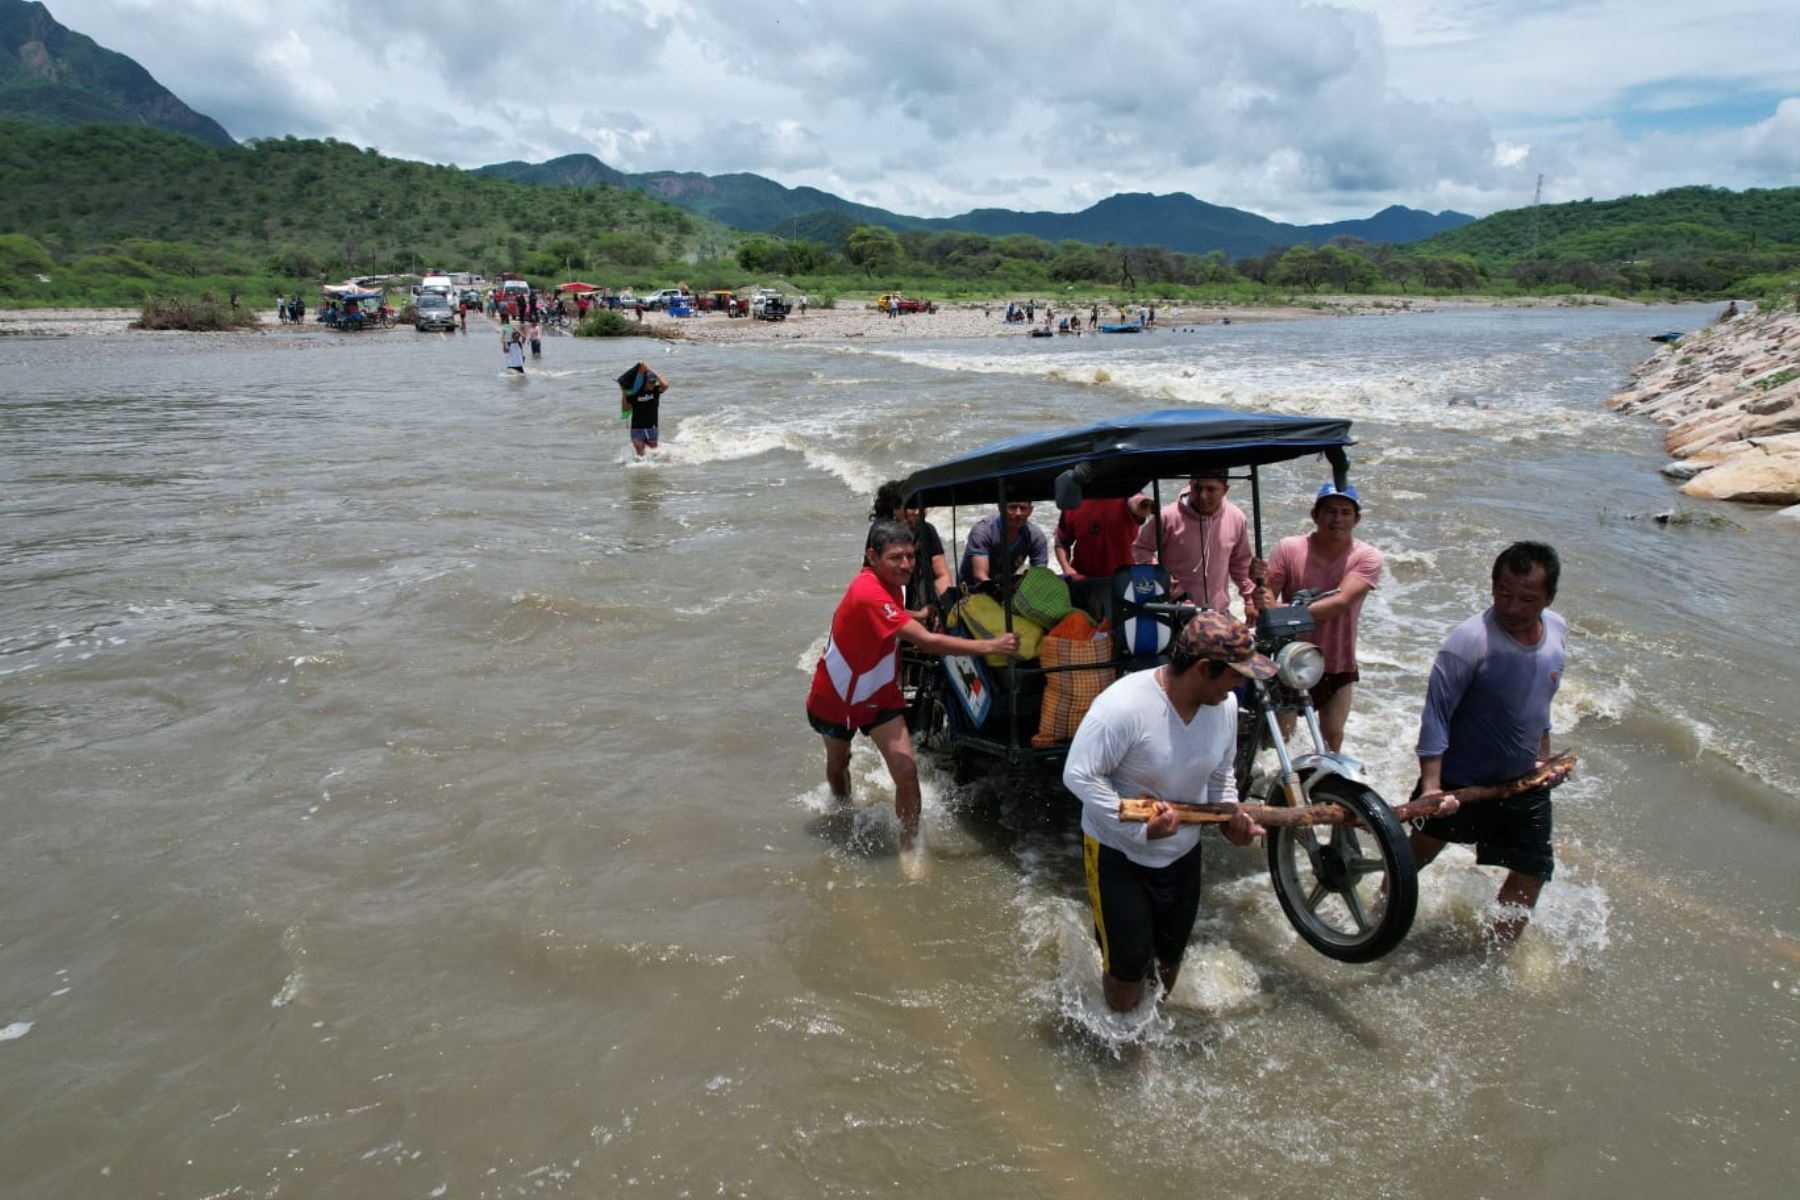 La alerta por lluvias intensas sigue vigente en diversas regiones del país y al menos 1.3 millones de peruanos se encuentran en peligro, advierte el COEN. ANDINA/Ricardo Cuba